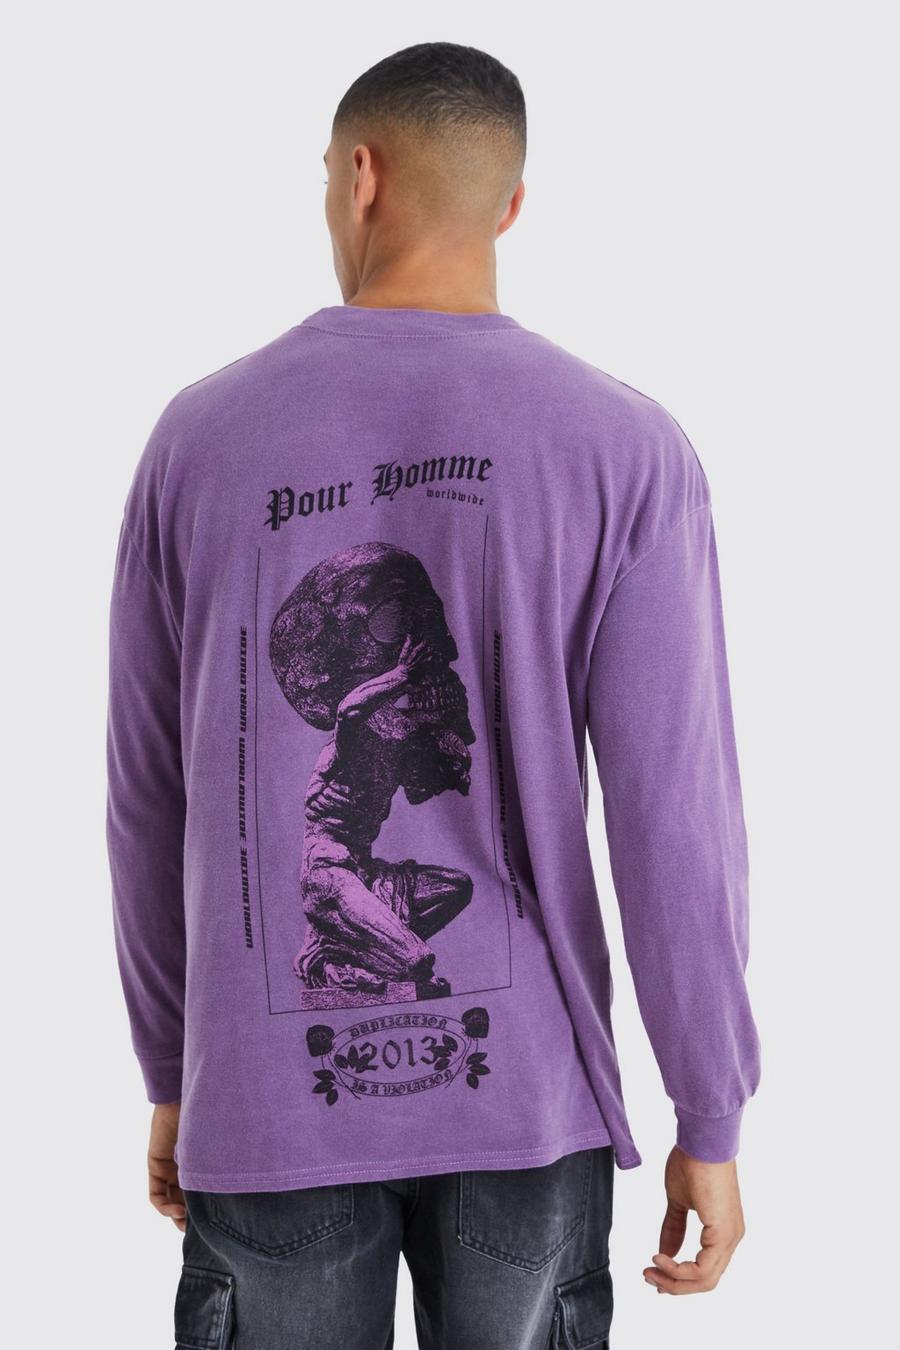 Purple Oversized Long Sleeve Skull Overdye T-shirt